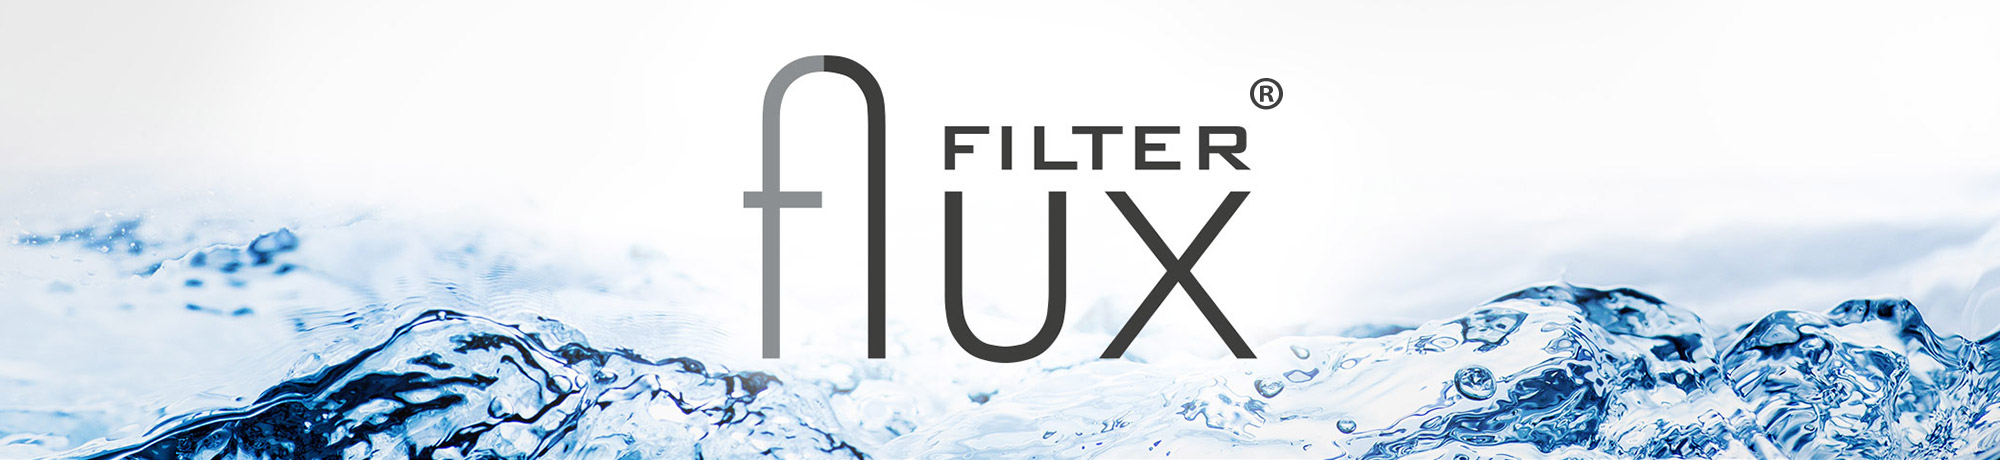 Filter flux